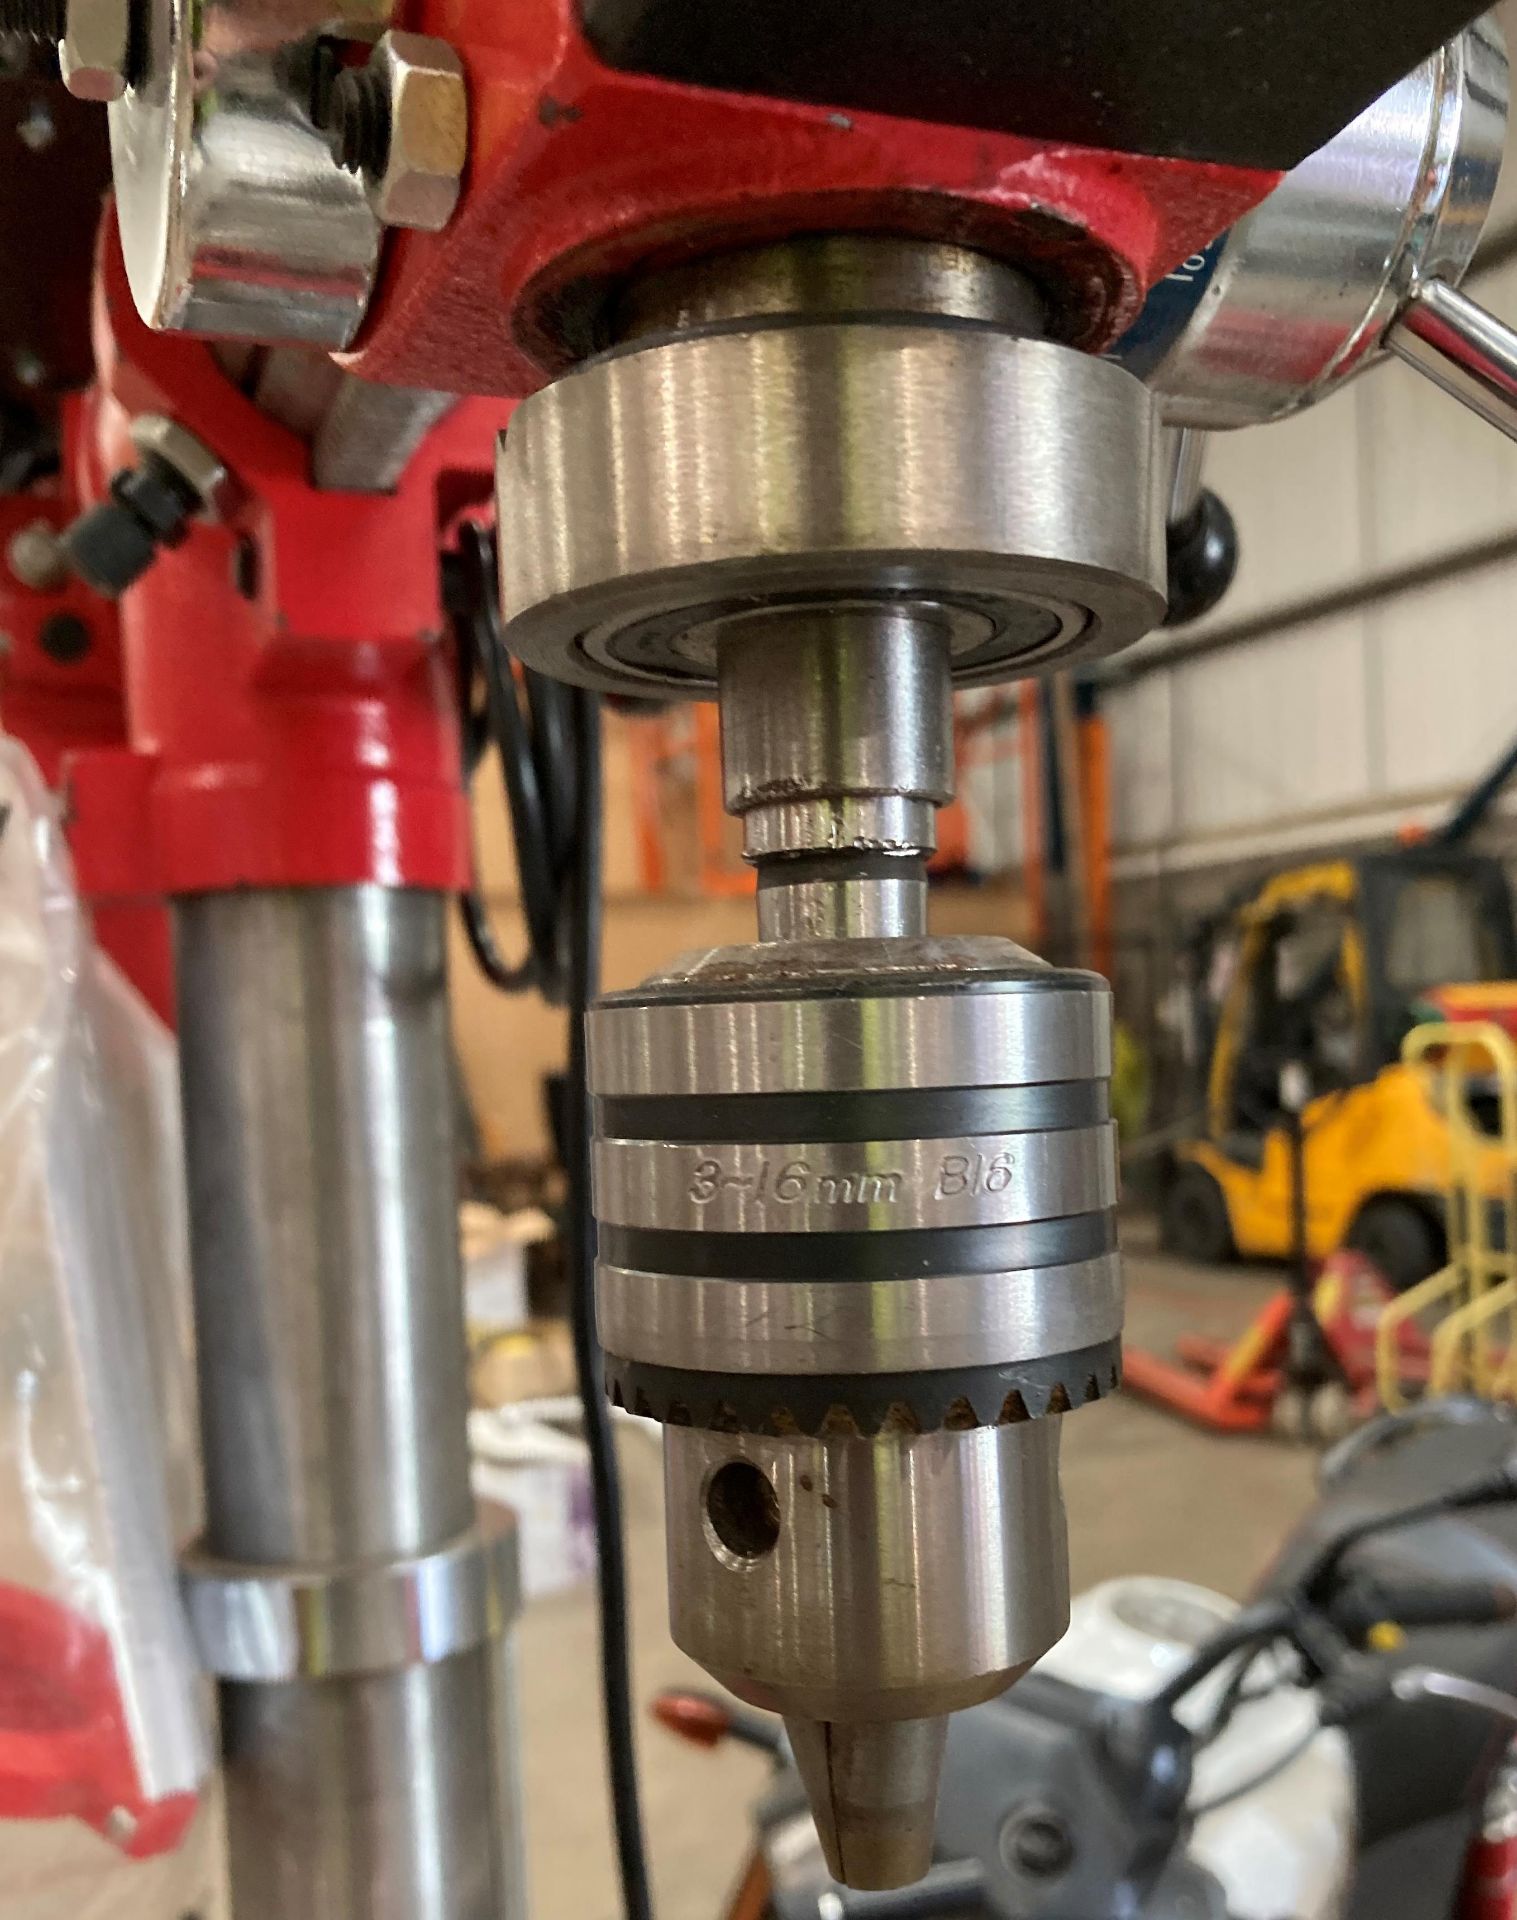 Sealey pillar drill 5-speed (240v), - Image 3 of 4